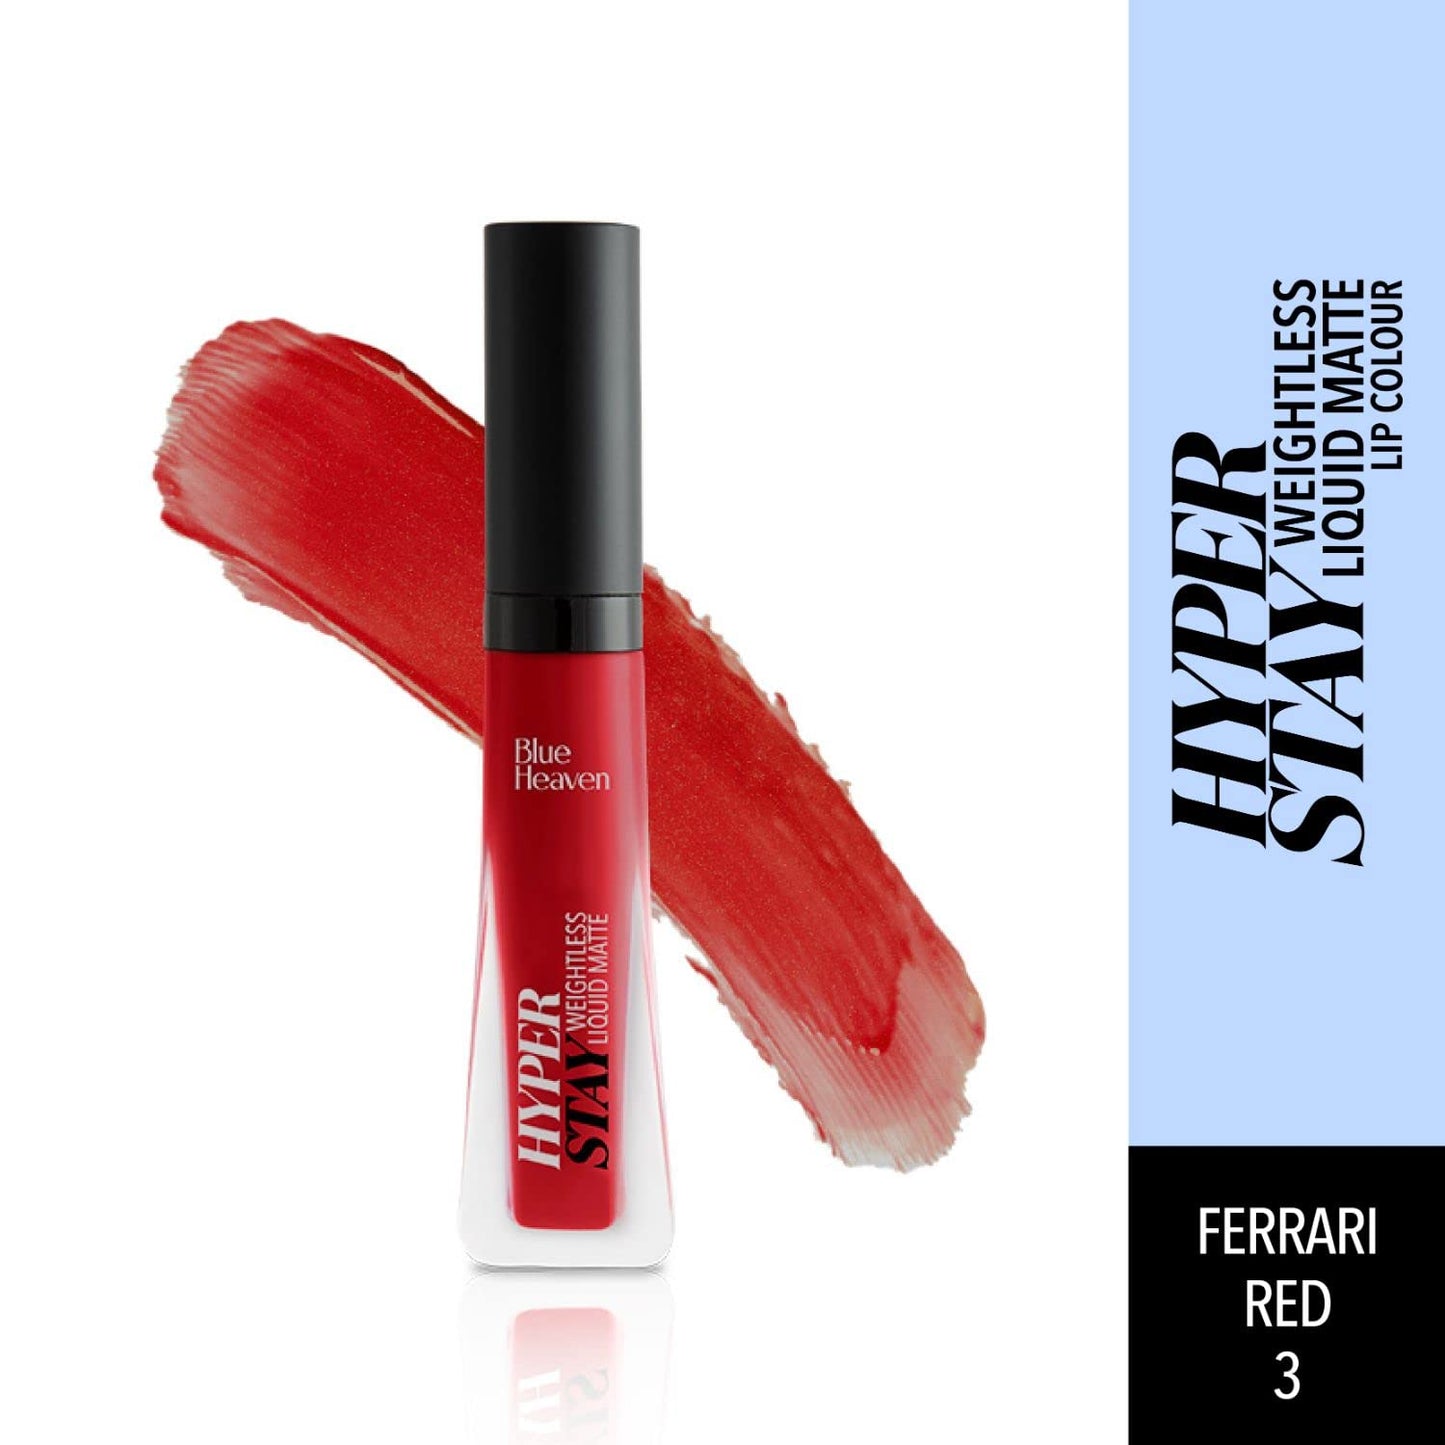 Blue Heaven Hyperstay Weightless Liquid Matte Lipstick, Smudgeproof, Transfer proof, Ferrari Red, 6ml